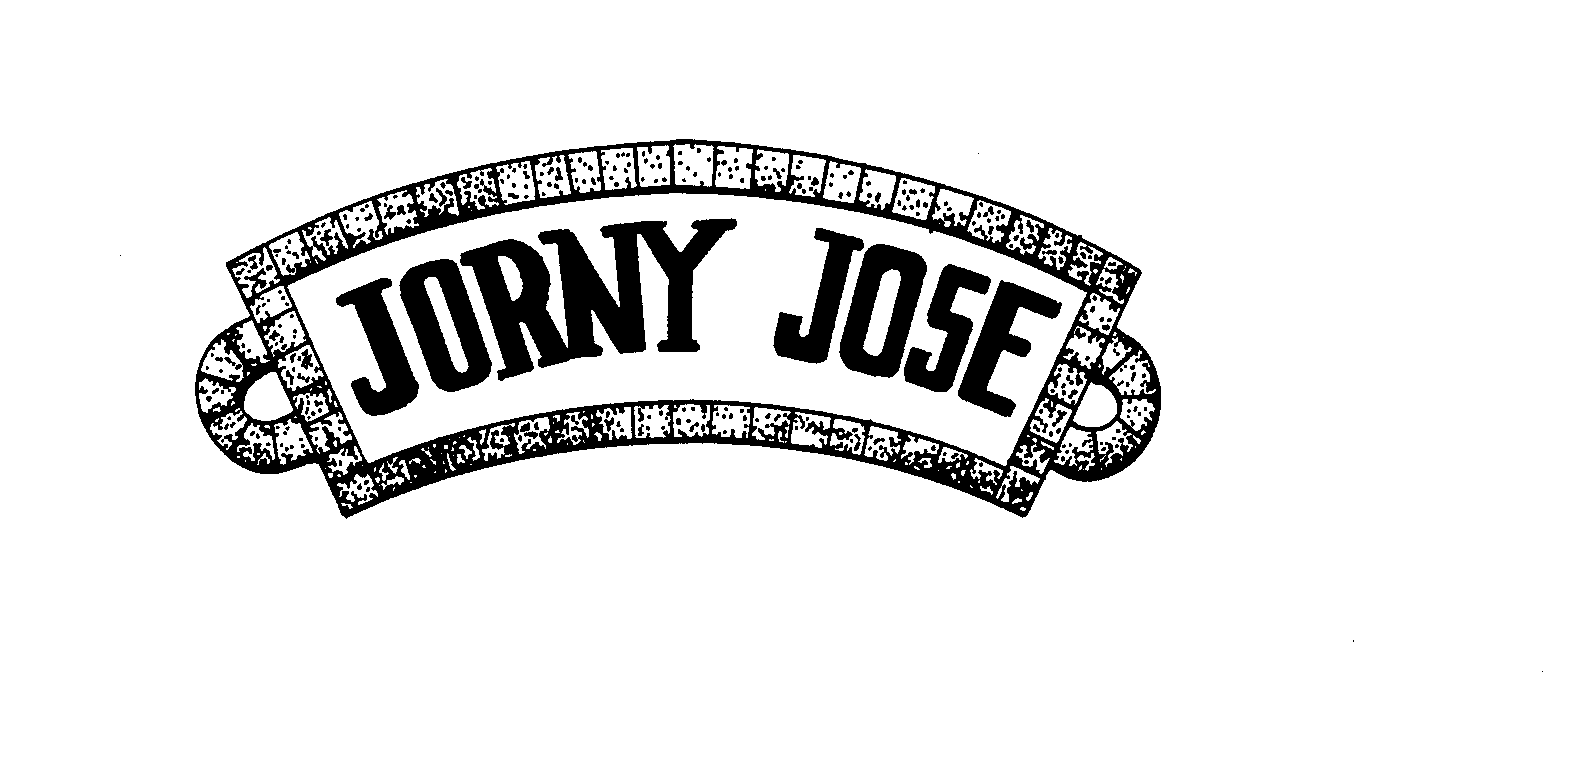  JORNY JOSE